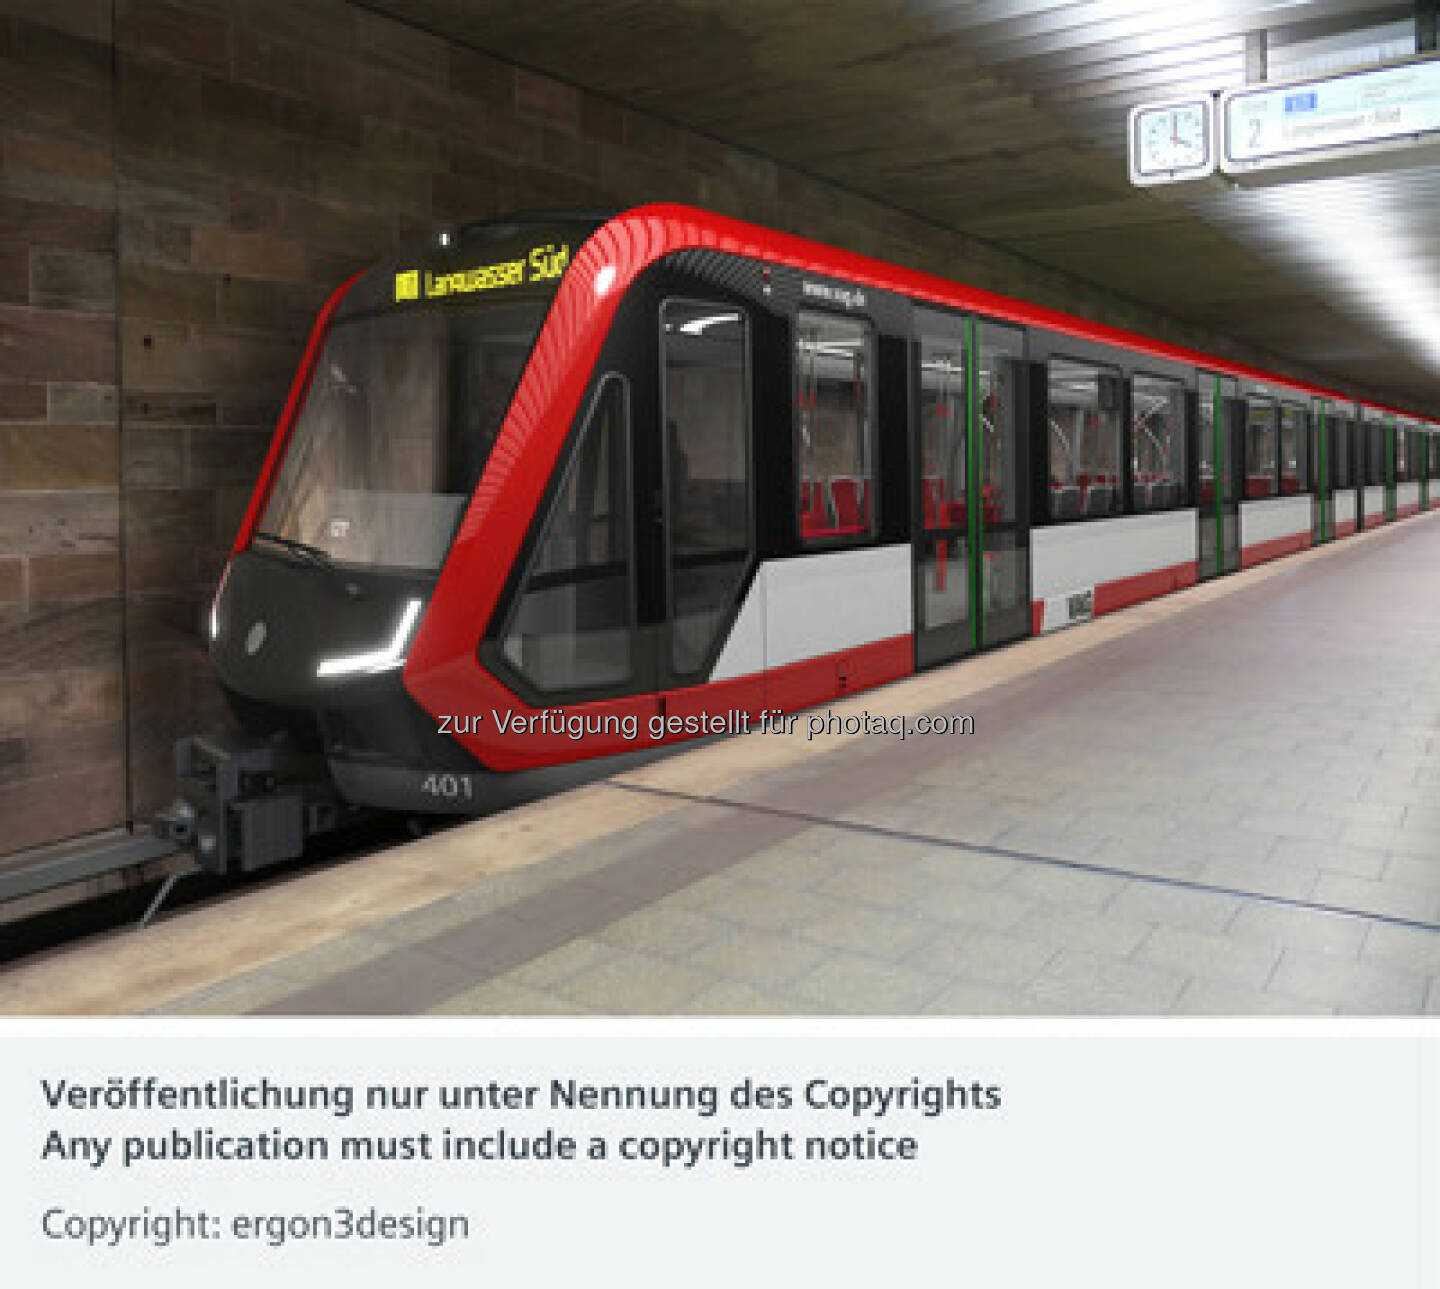 U-Bahn-Zug Typ G1 : Die VAG Verkehrs-Aktiengesellschaft Nürnberg ordert neue U-Bahnen bei Siemens : Die Auslieferung ist ab Mitte 2018 geplant : Copyright: ergon3design